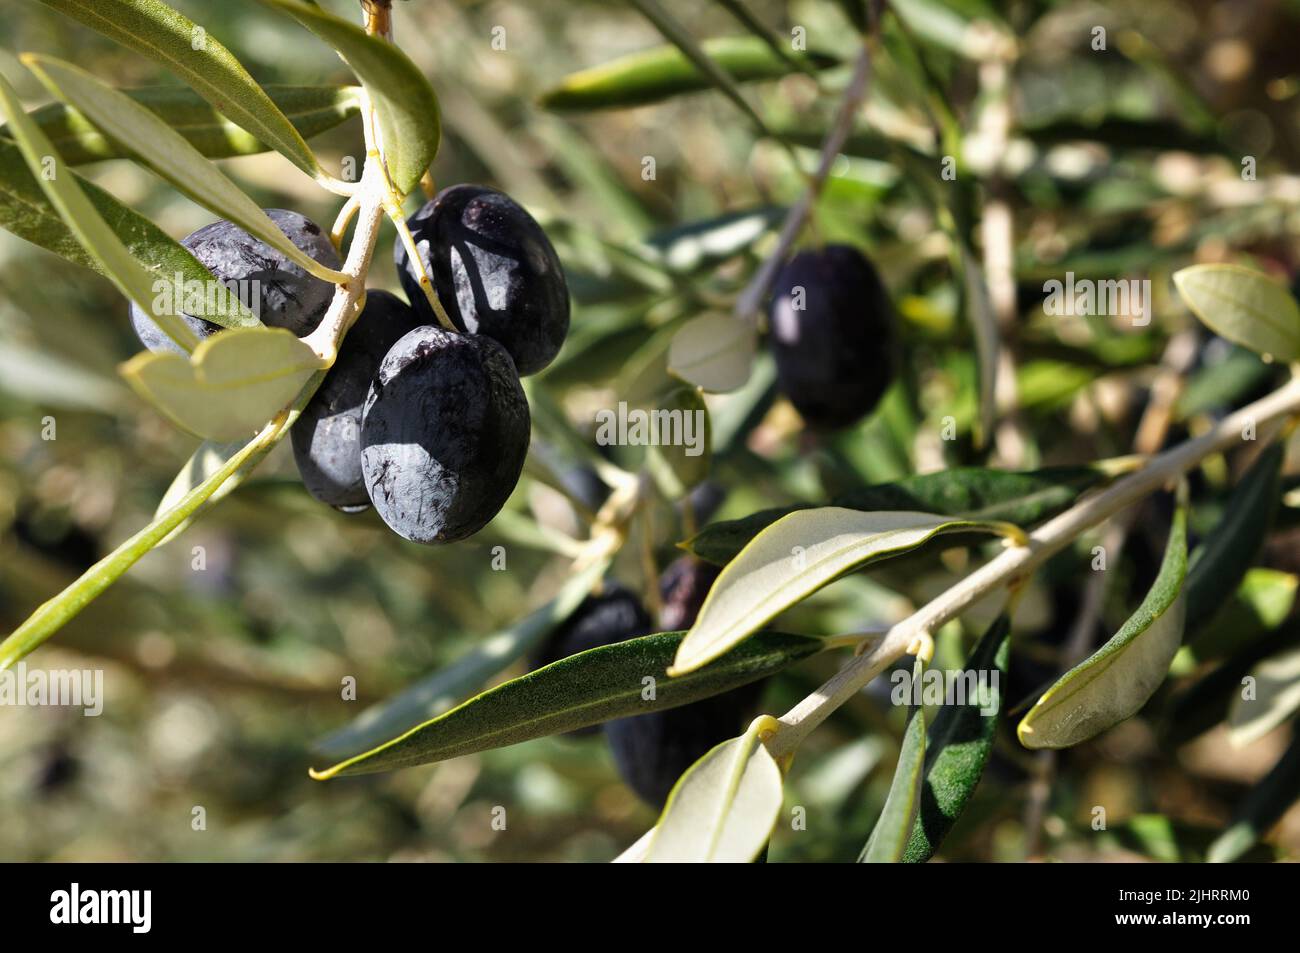 Frutta di oliva nera su ramo di oliva. L'olivo, nome botanico Olea europaea, che significa 'olivo europeo' in latino, è una specie di piccolo albero o arbusto in Foto Stock